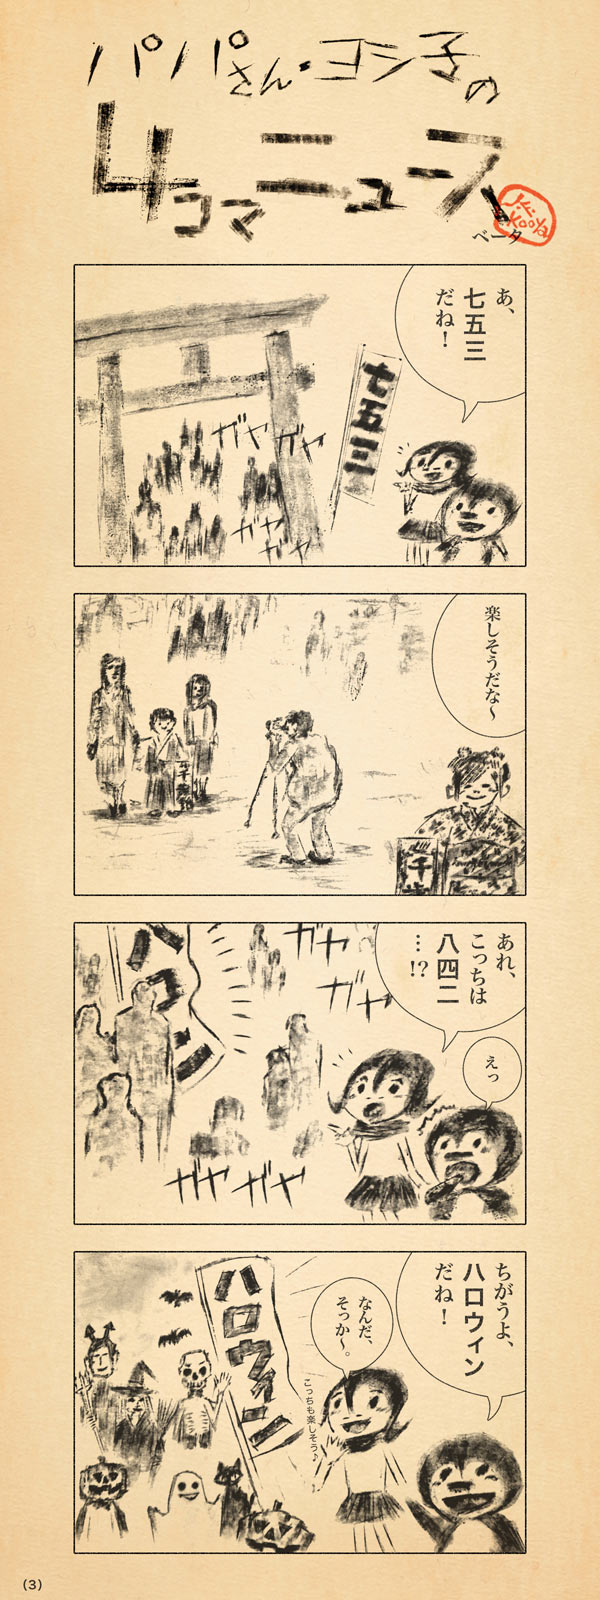 パパさん・ヨシ子の４コマニュース（３） by J.F.Kooya